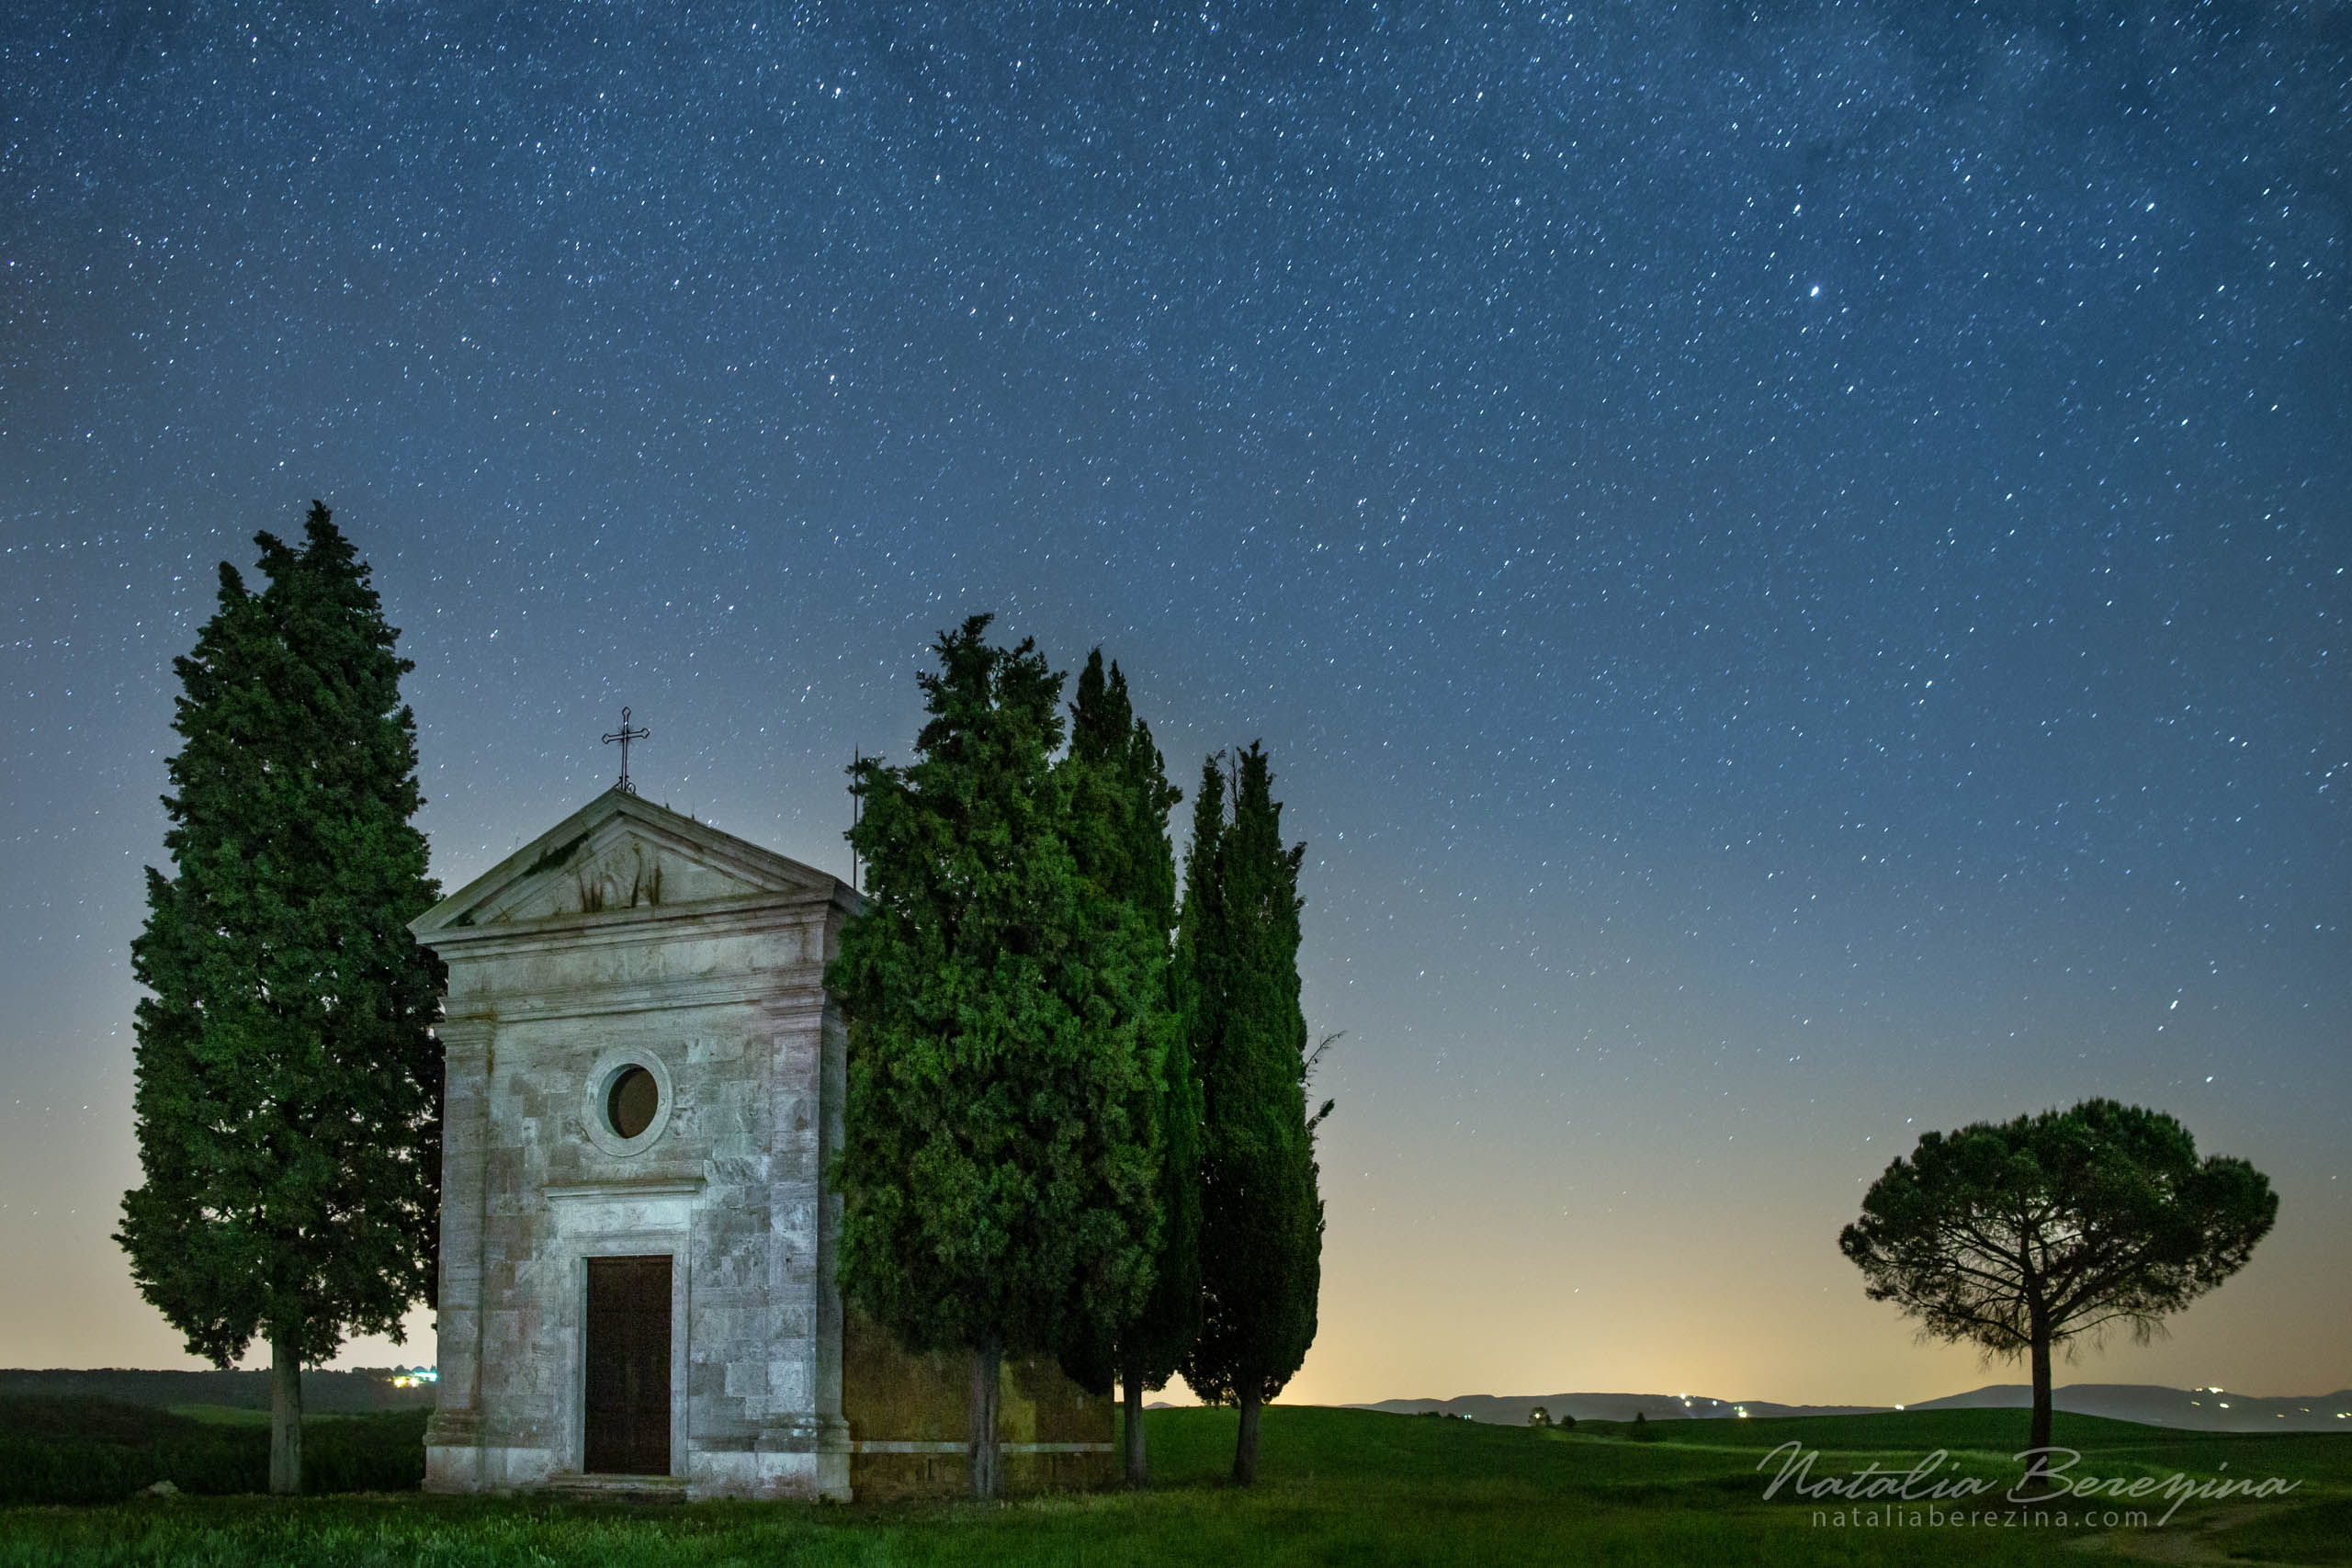 Tuscany, Italy, cityscape, star, night time, Milky way, tree, church TU1-NBDK1U2051 - Tuscany, Italy - Natalia Berezina Photography